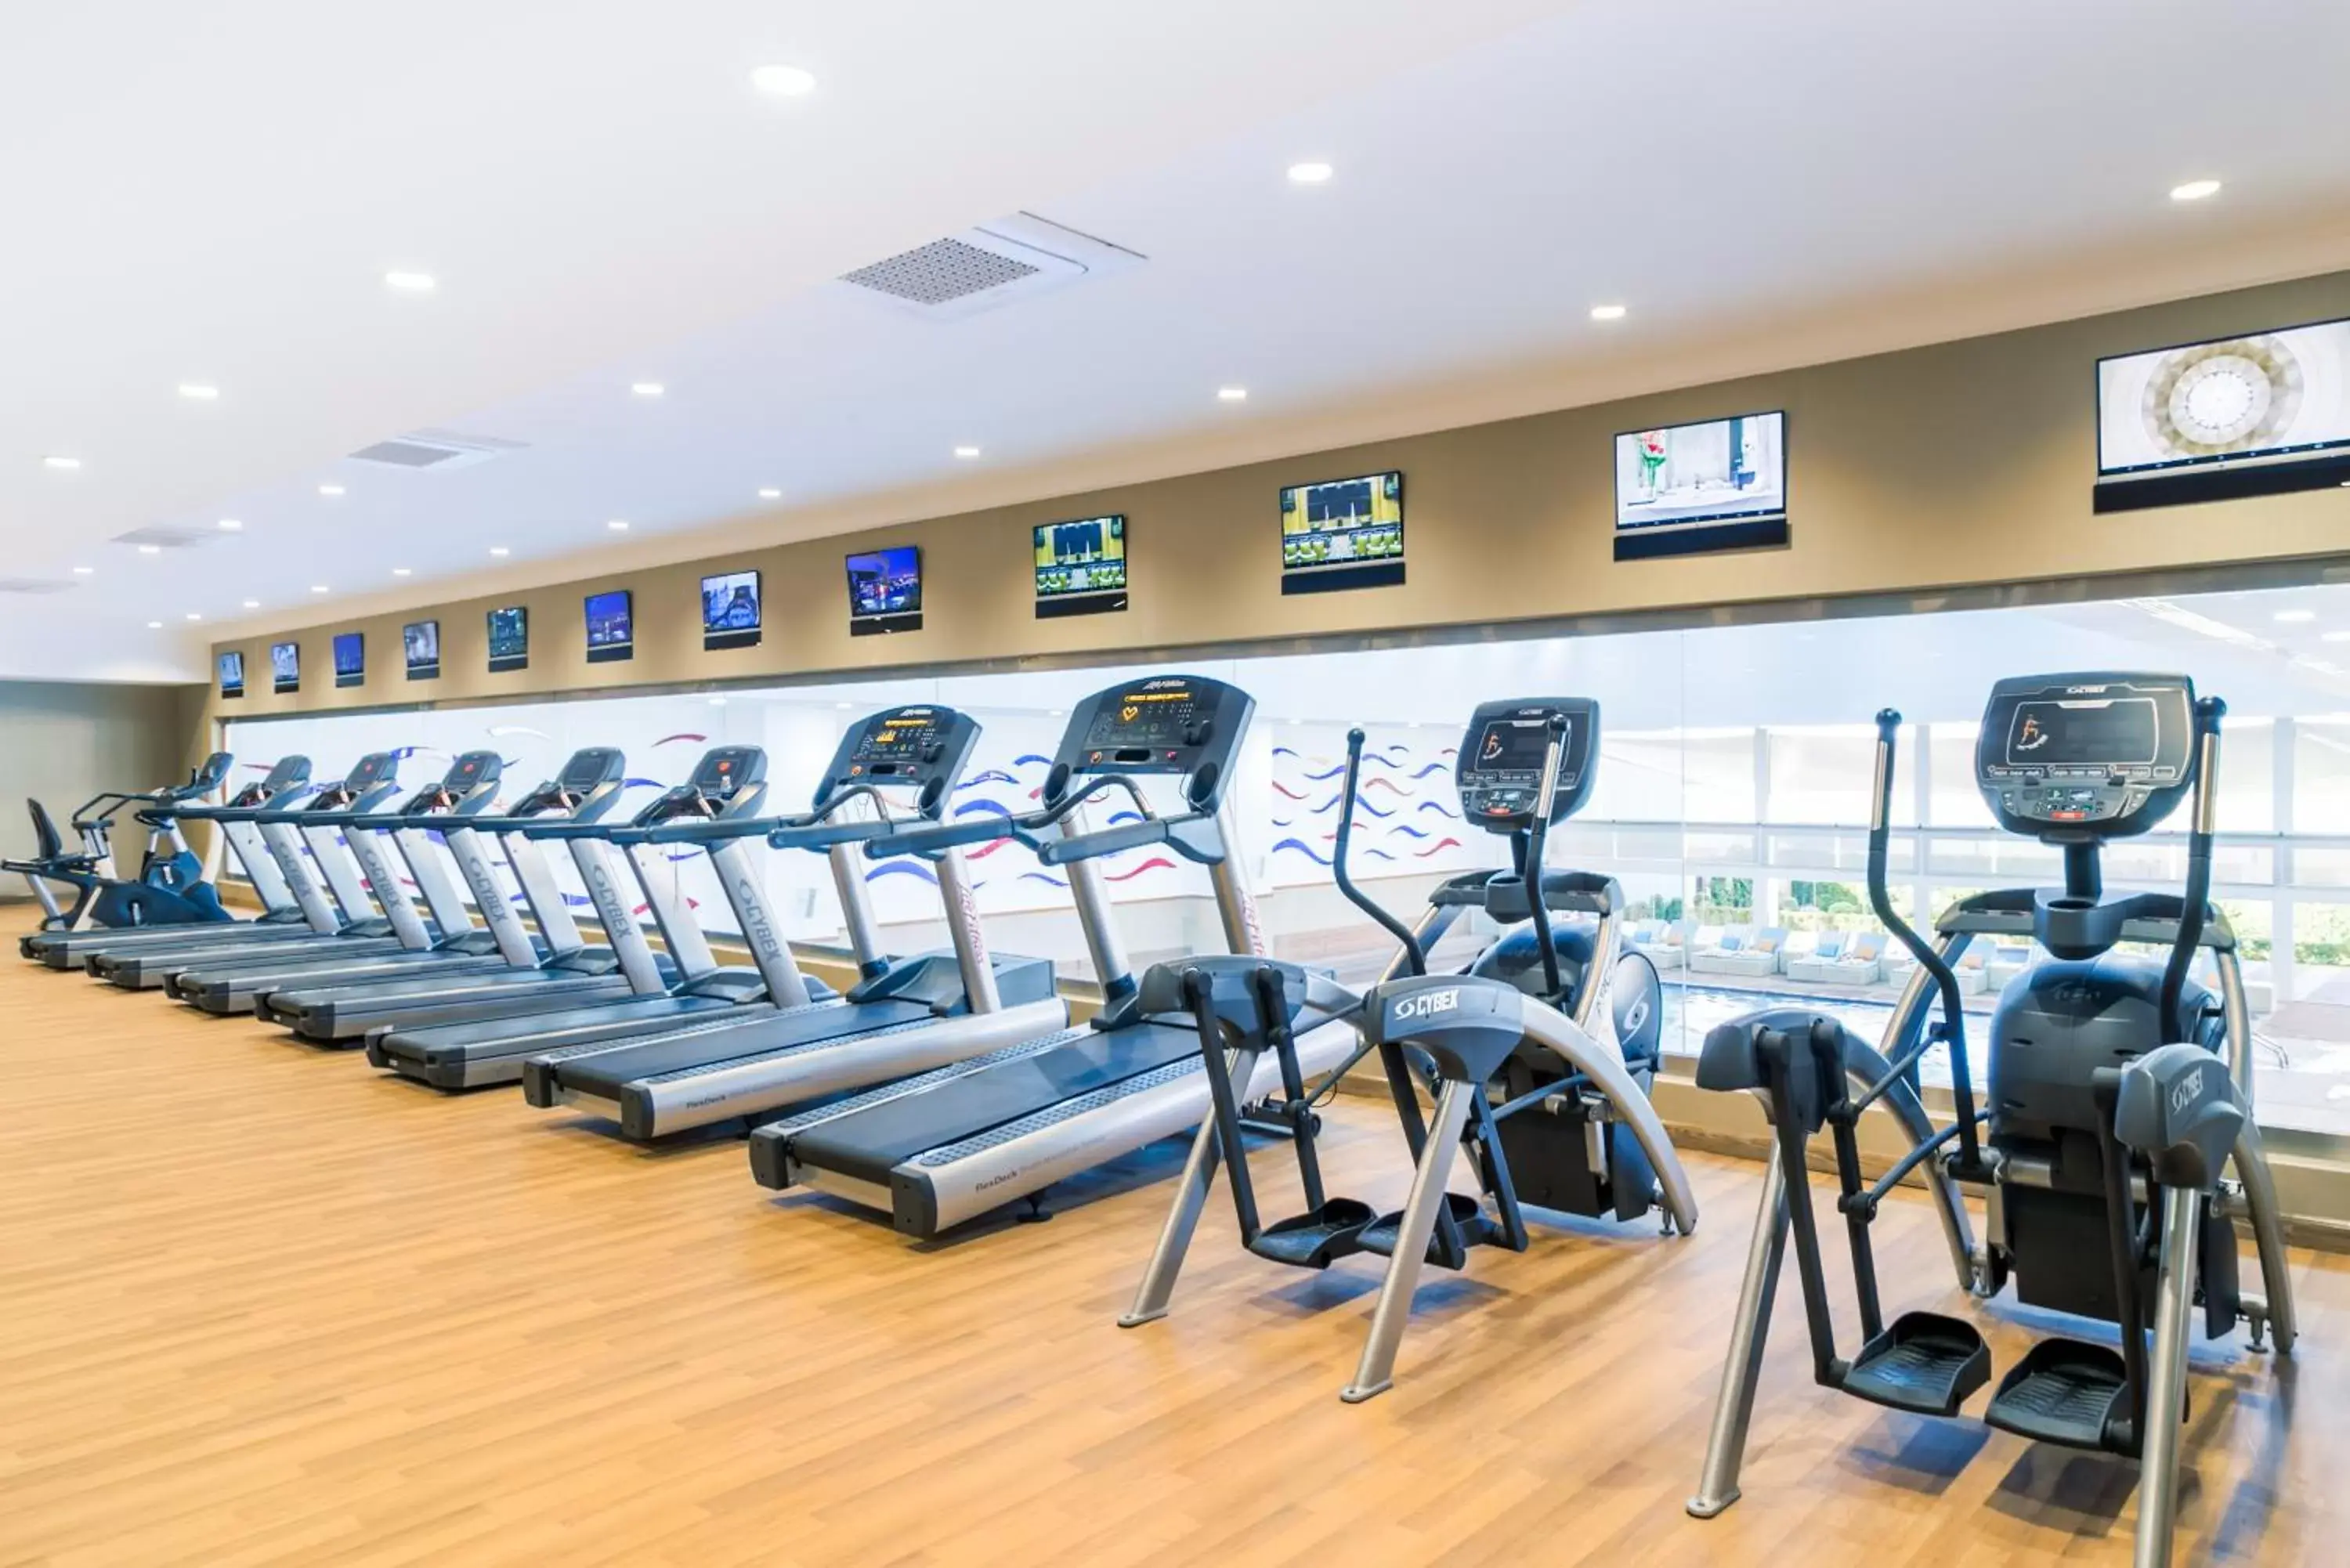 Fitness centre/facilities, Fitness Center/Facilities in Babylon Rotana Hotel